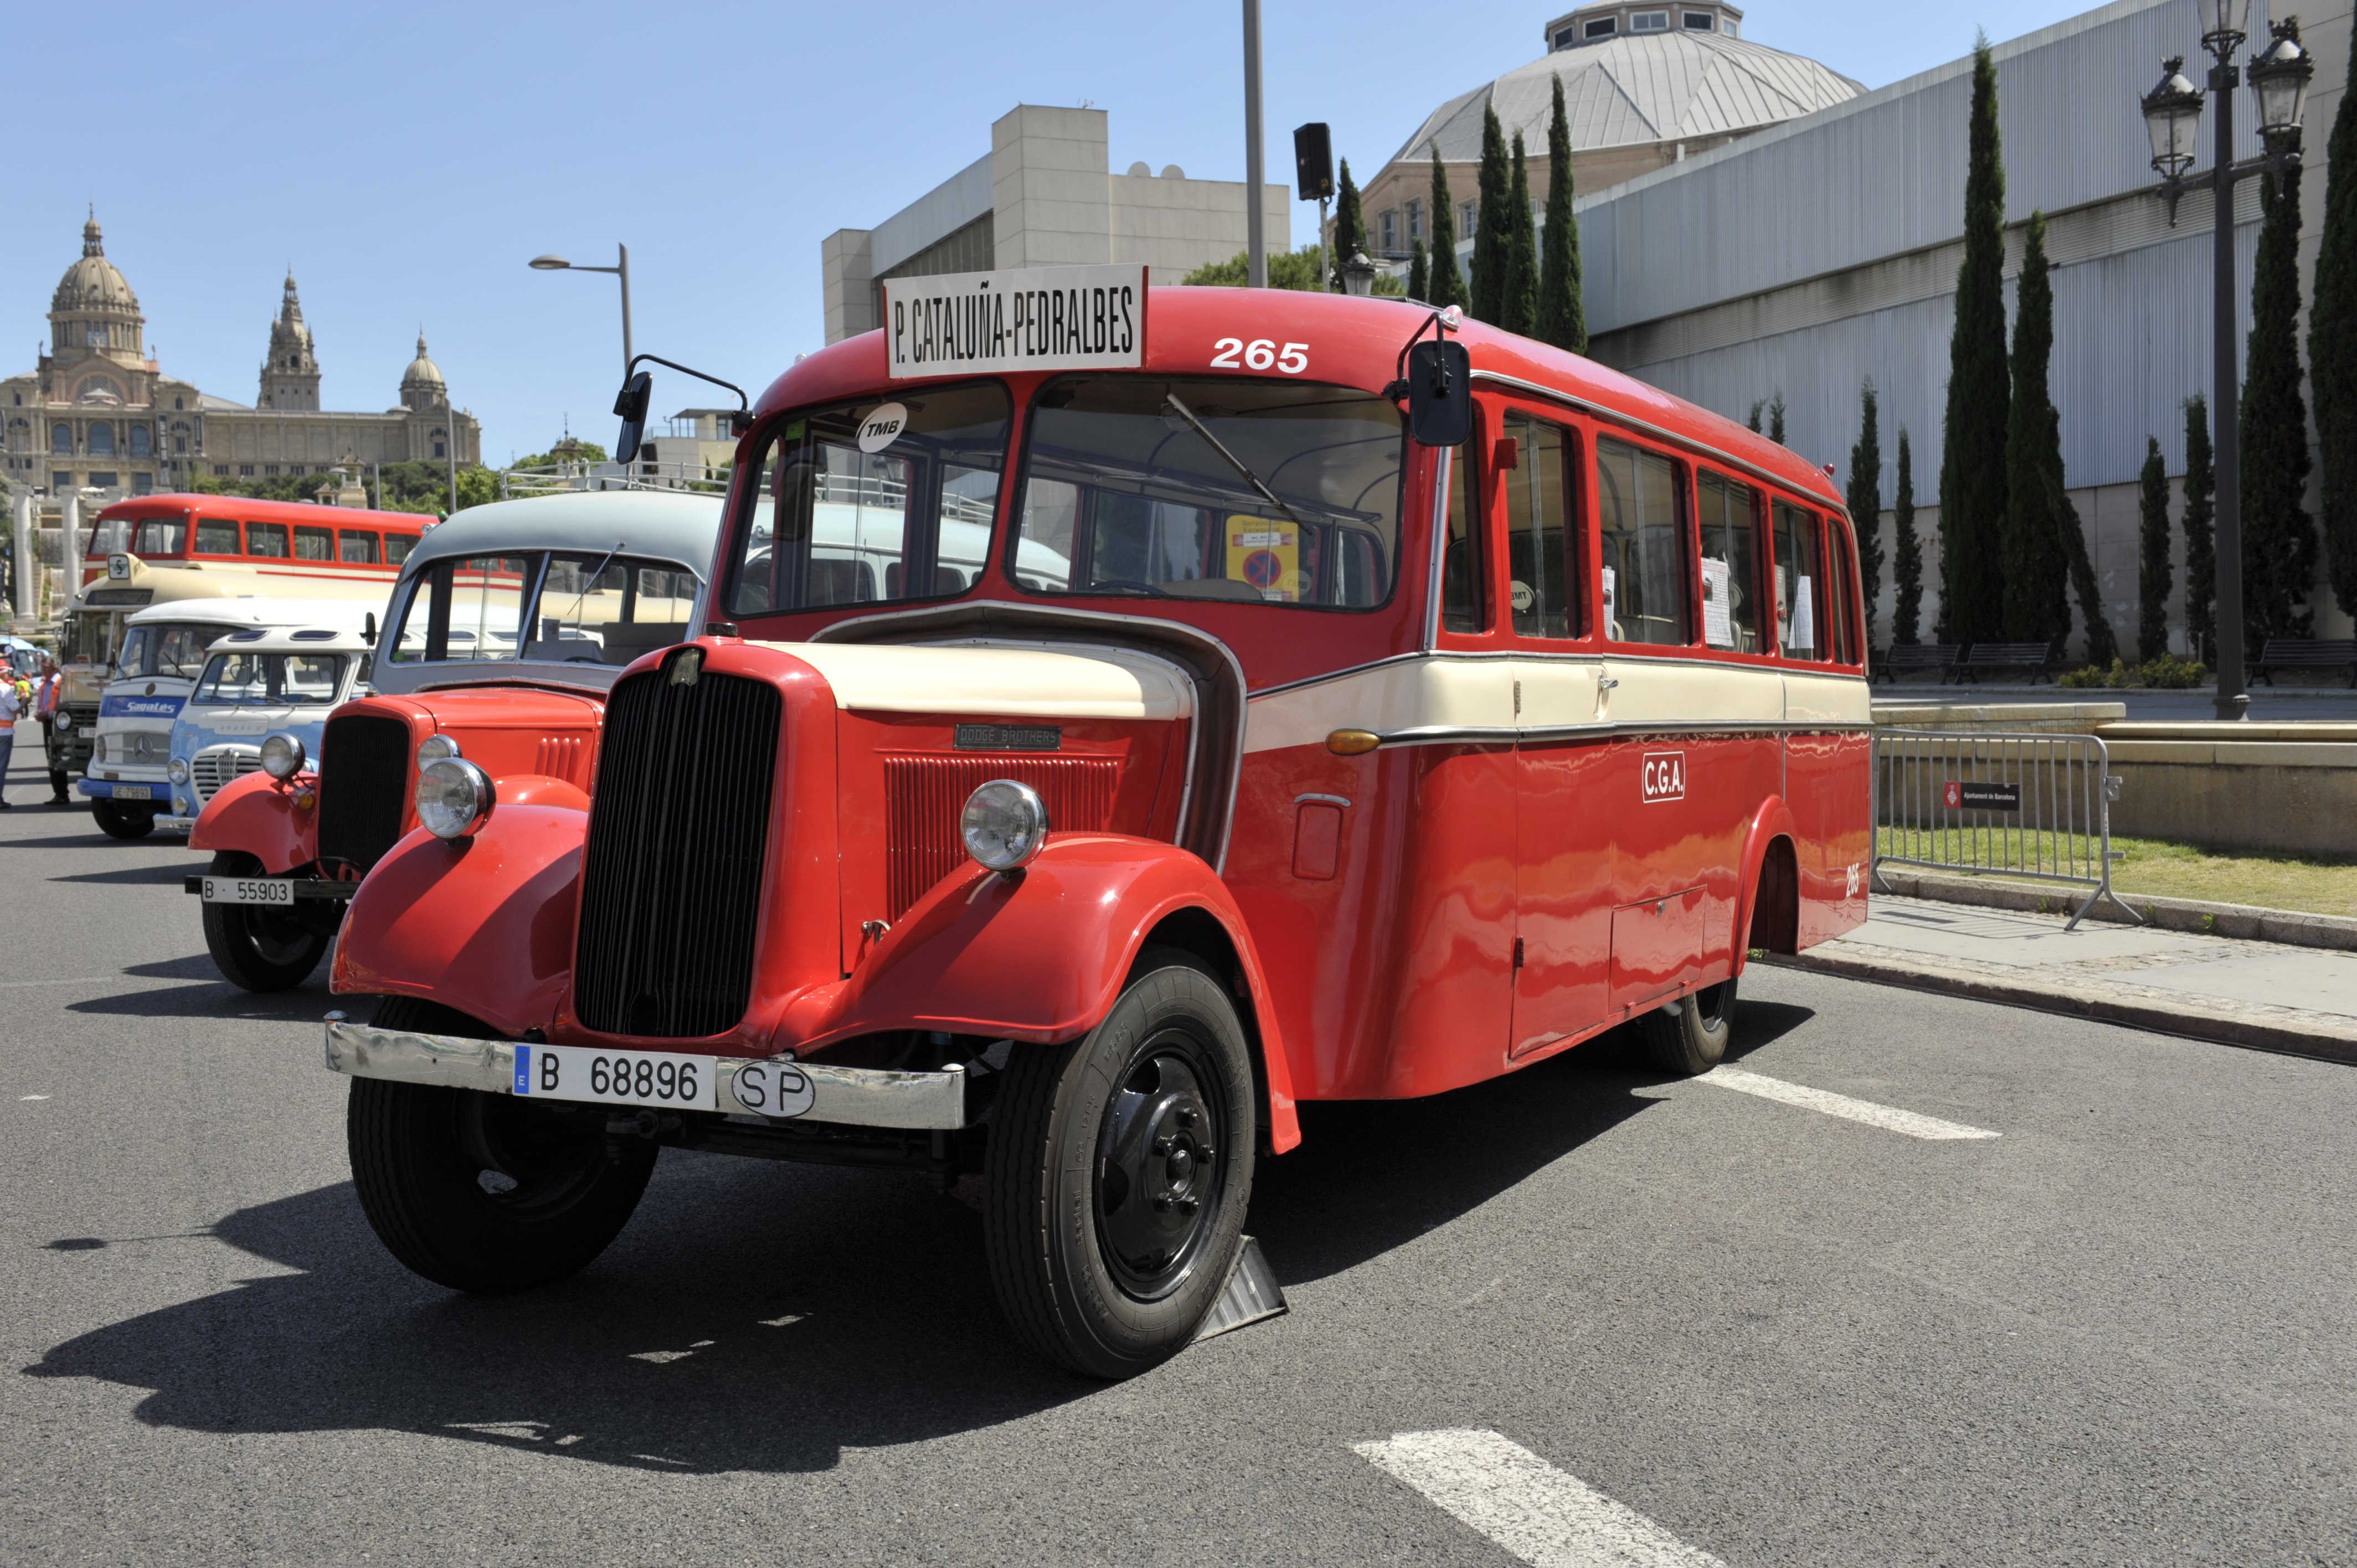 Cita para los amantes del transporte histórico: exhibición de autobuses clásicos en Montjuïc